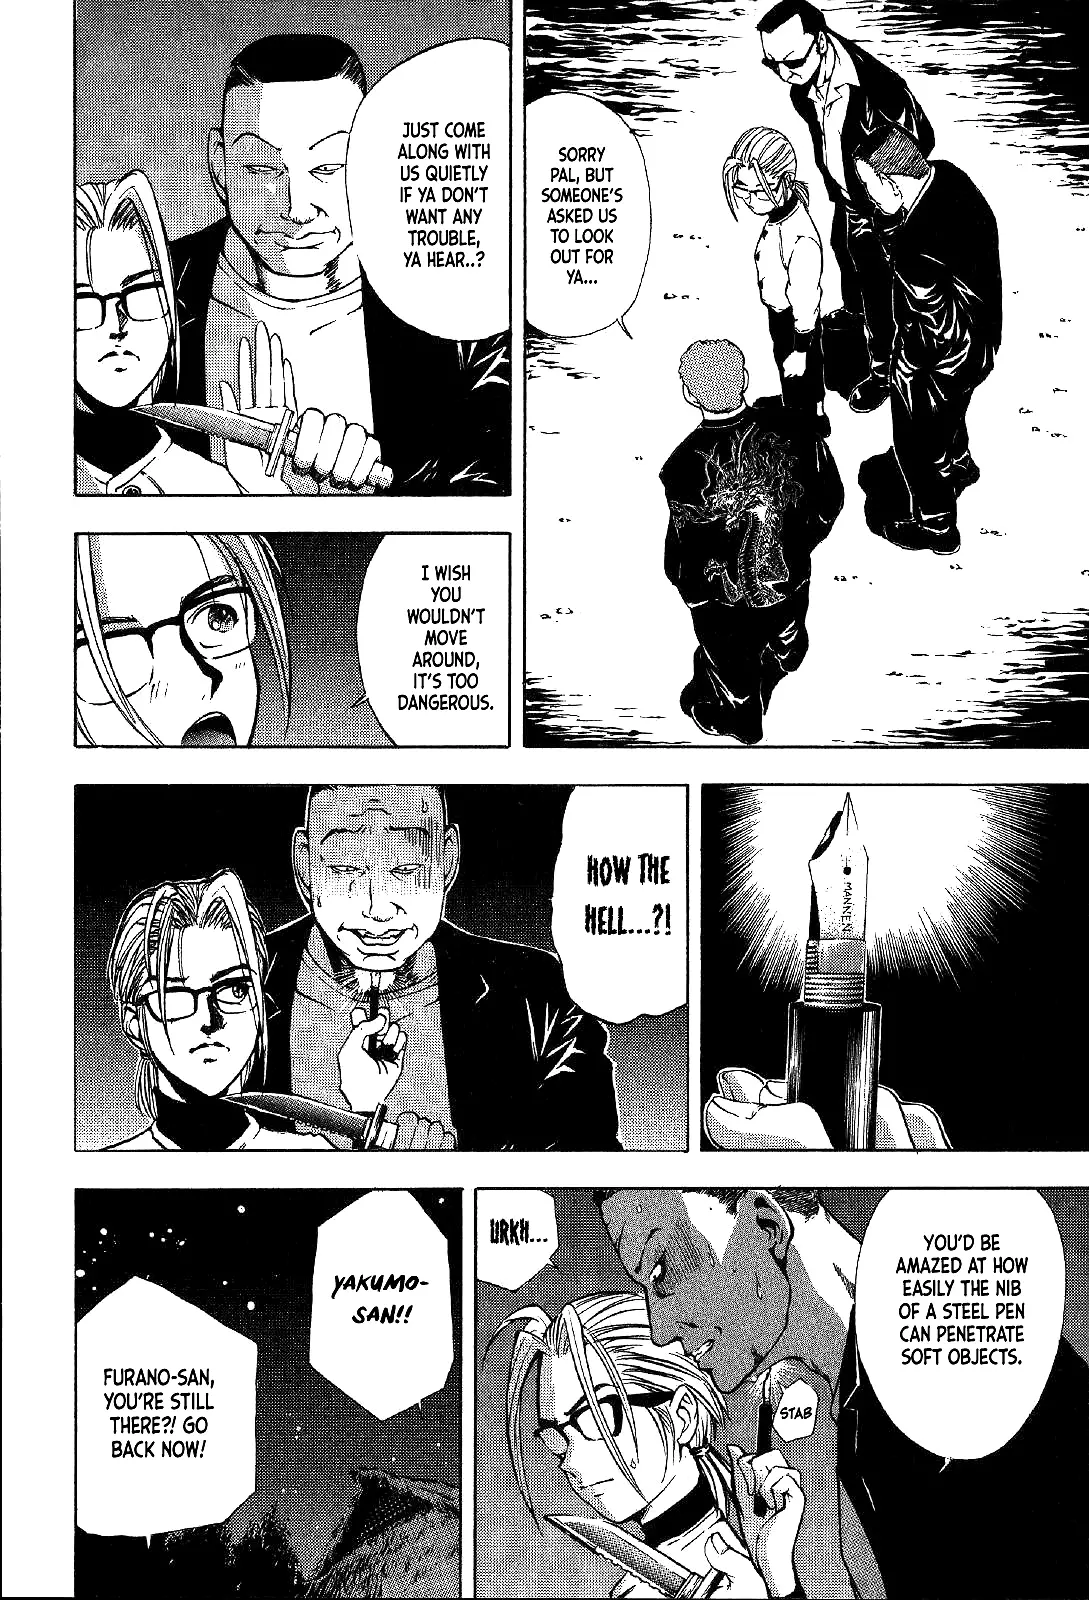 Mystery Minzoku Gakusha Yakumo Itsuki - 15 page 17